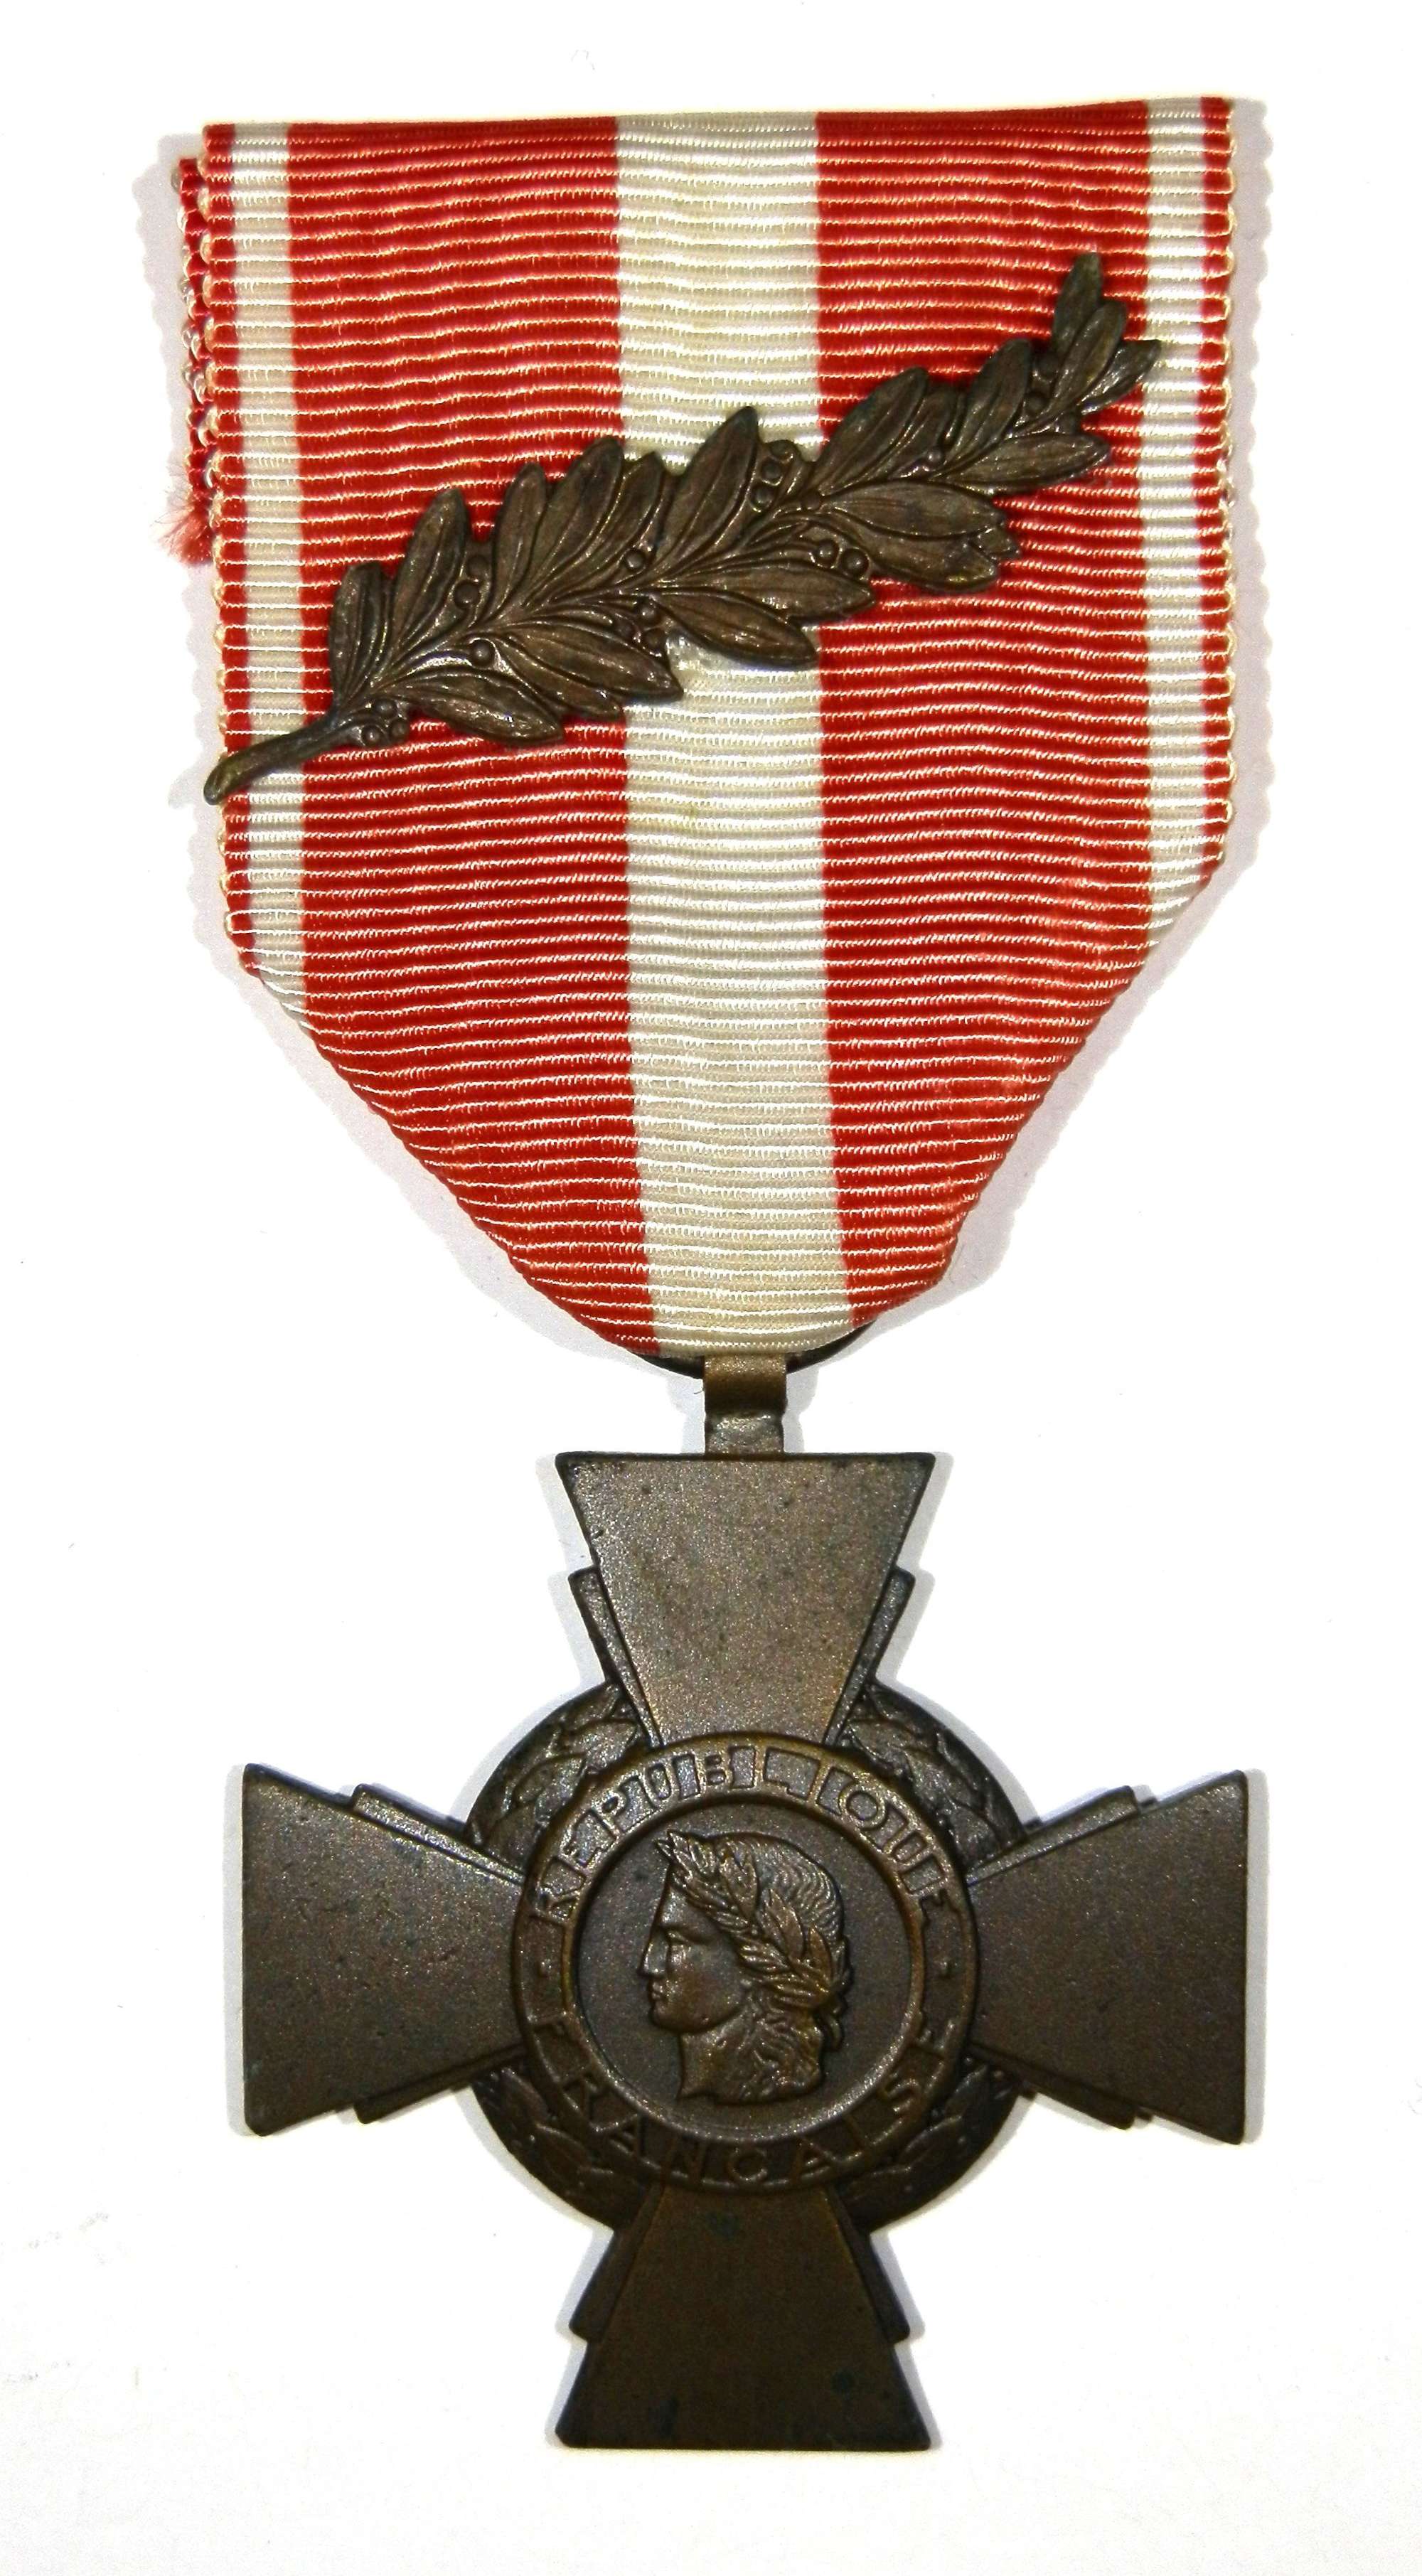 Croix De La Valeur Militarire. ‘French Military Cross of Valour’.